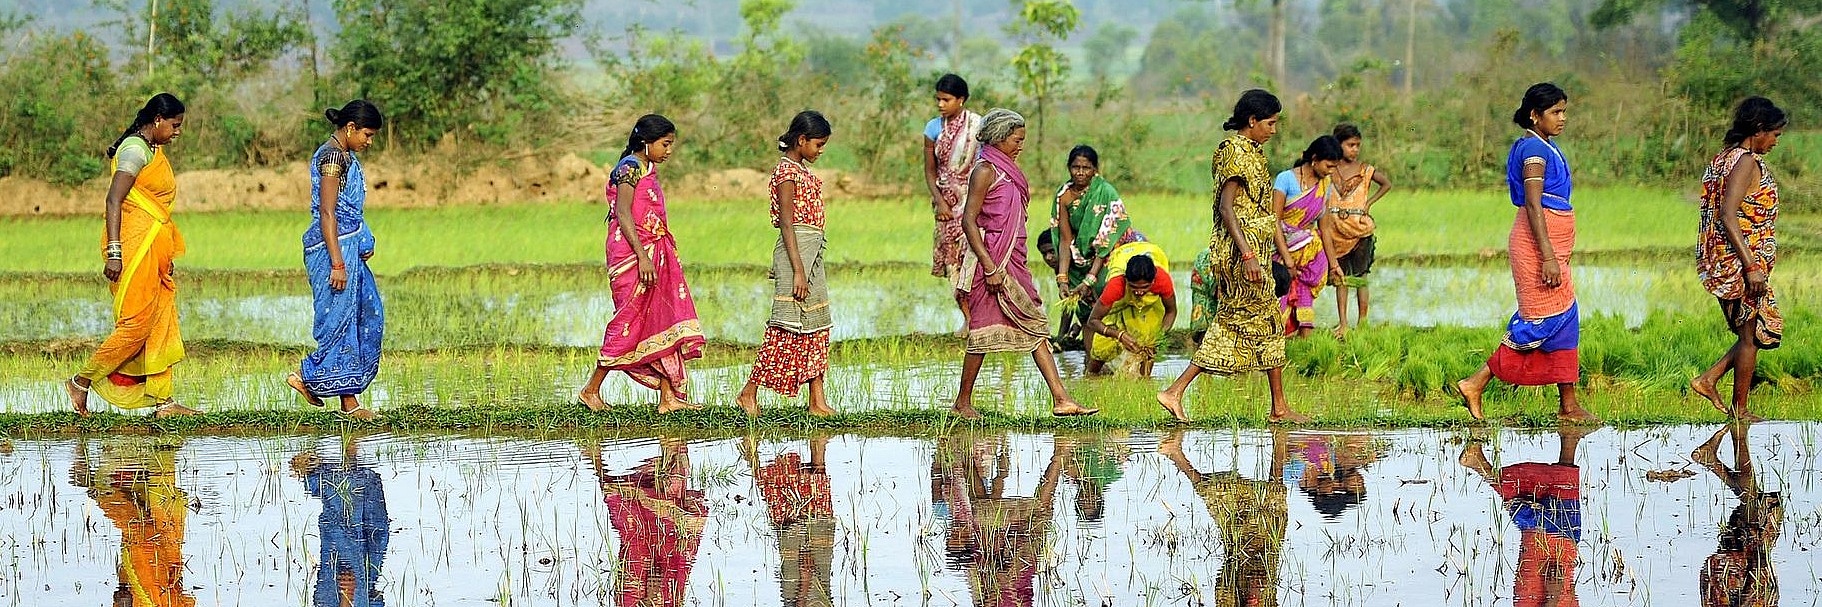 Südasiatische Frauen in traditioneller Kleidung laufen barfuß über Graskorridor eines Flusses entlang